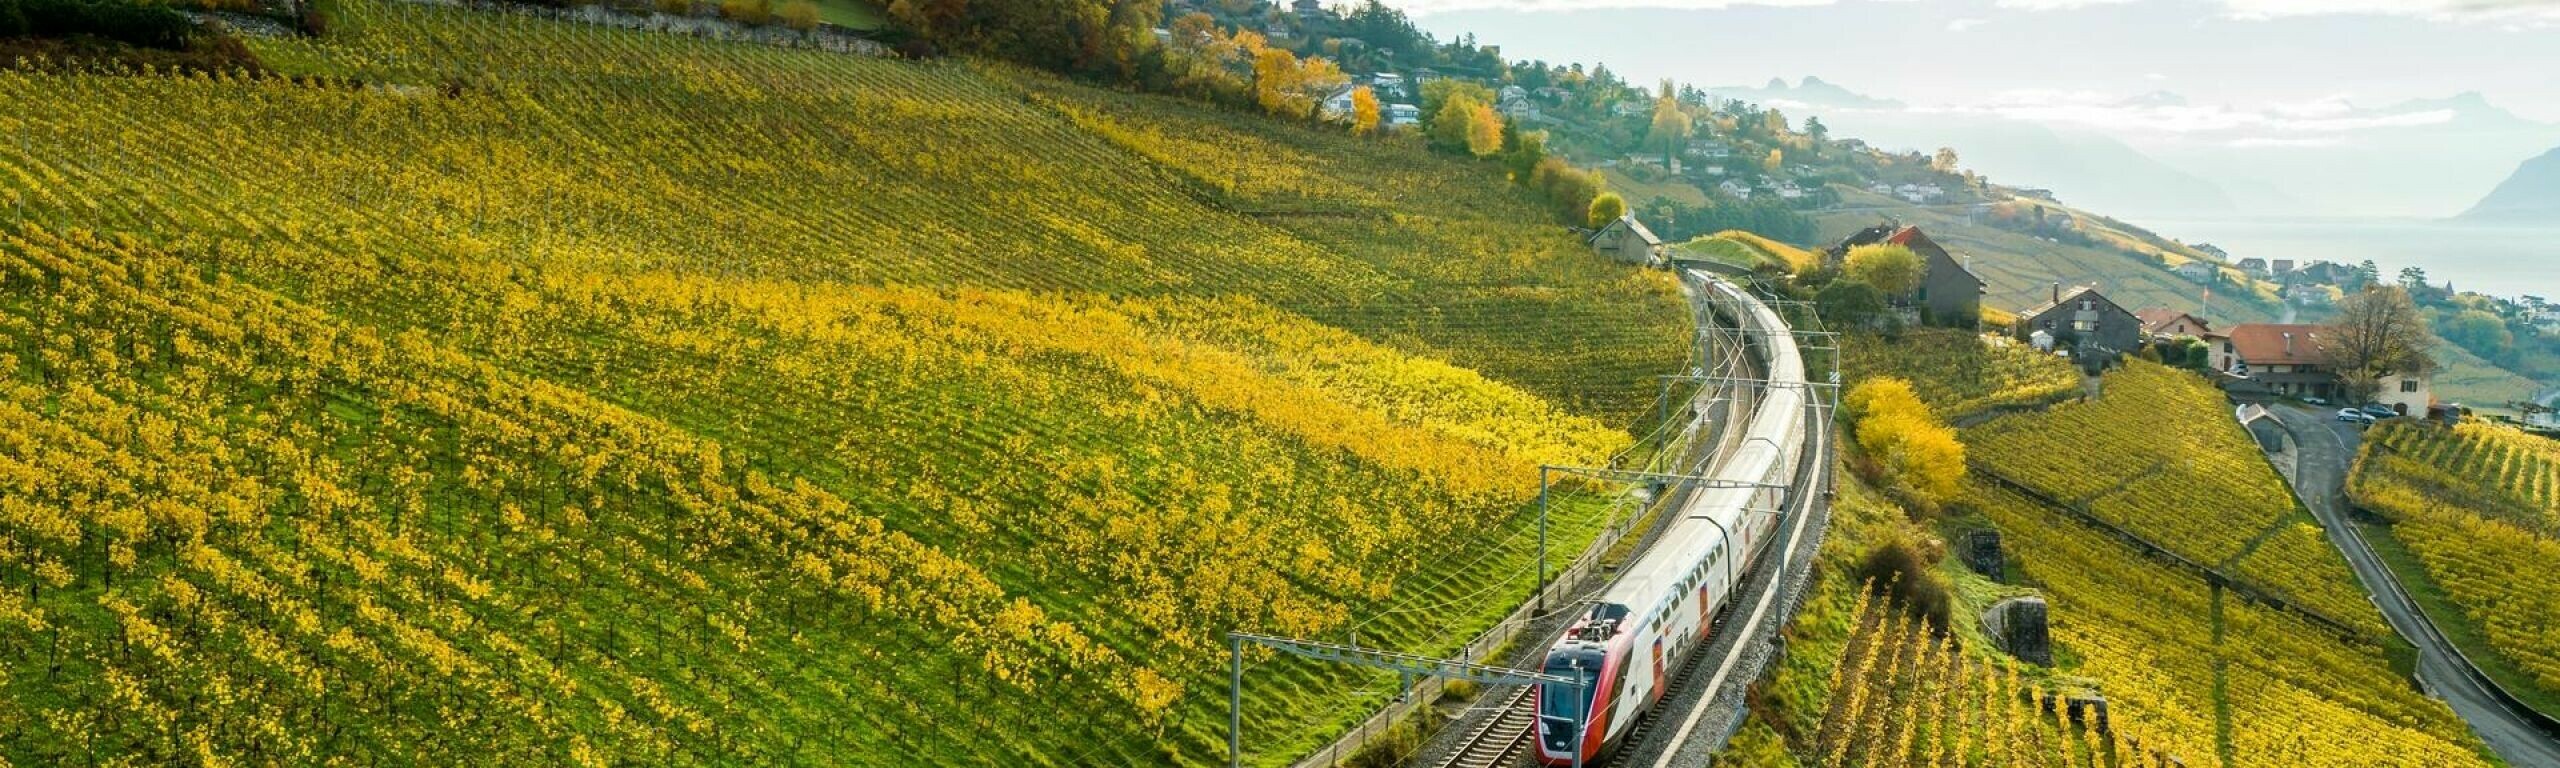 Ein Zug fährt durch die Weinberge des Lavaux